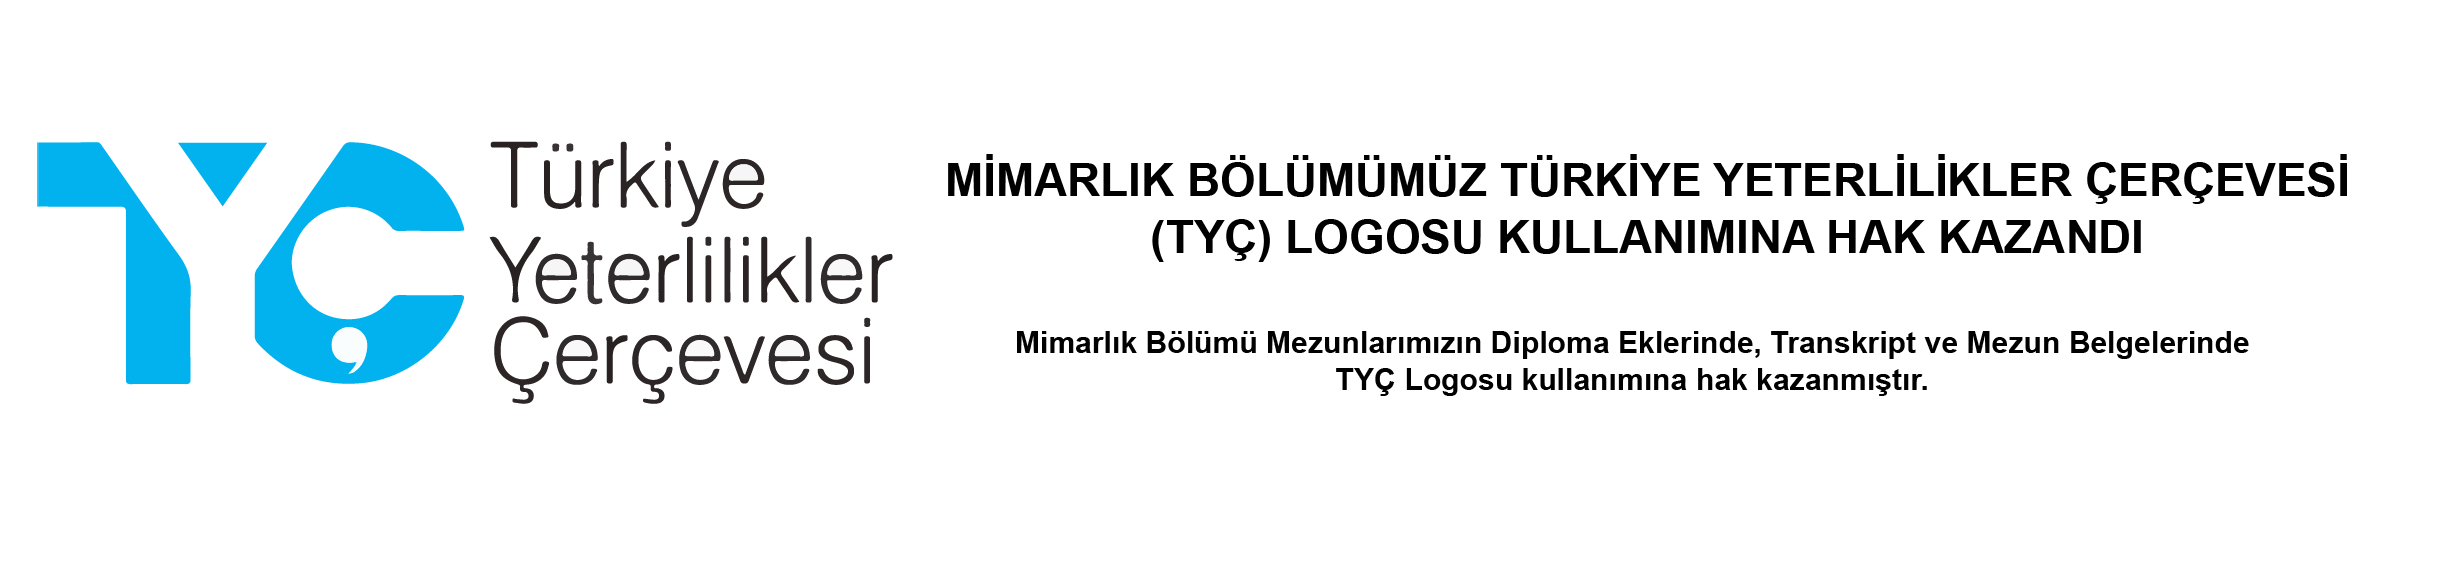 Mimarlık Bölümümüz Türkiye Yeterlilikler Çerçevesi (TYÇ) Logosu Kullanımına Hak Kazandı.